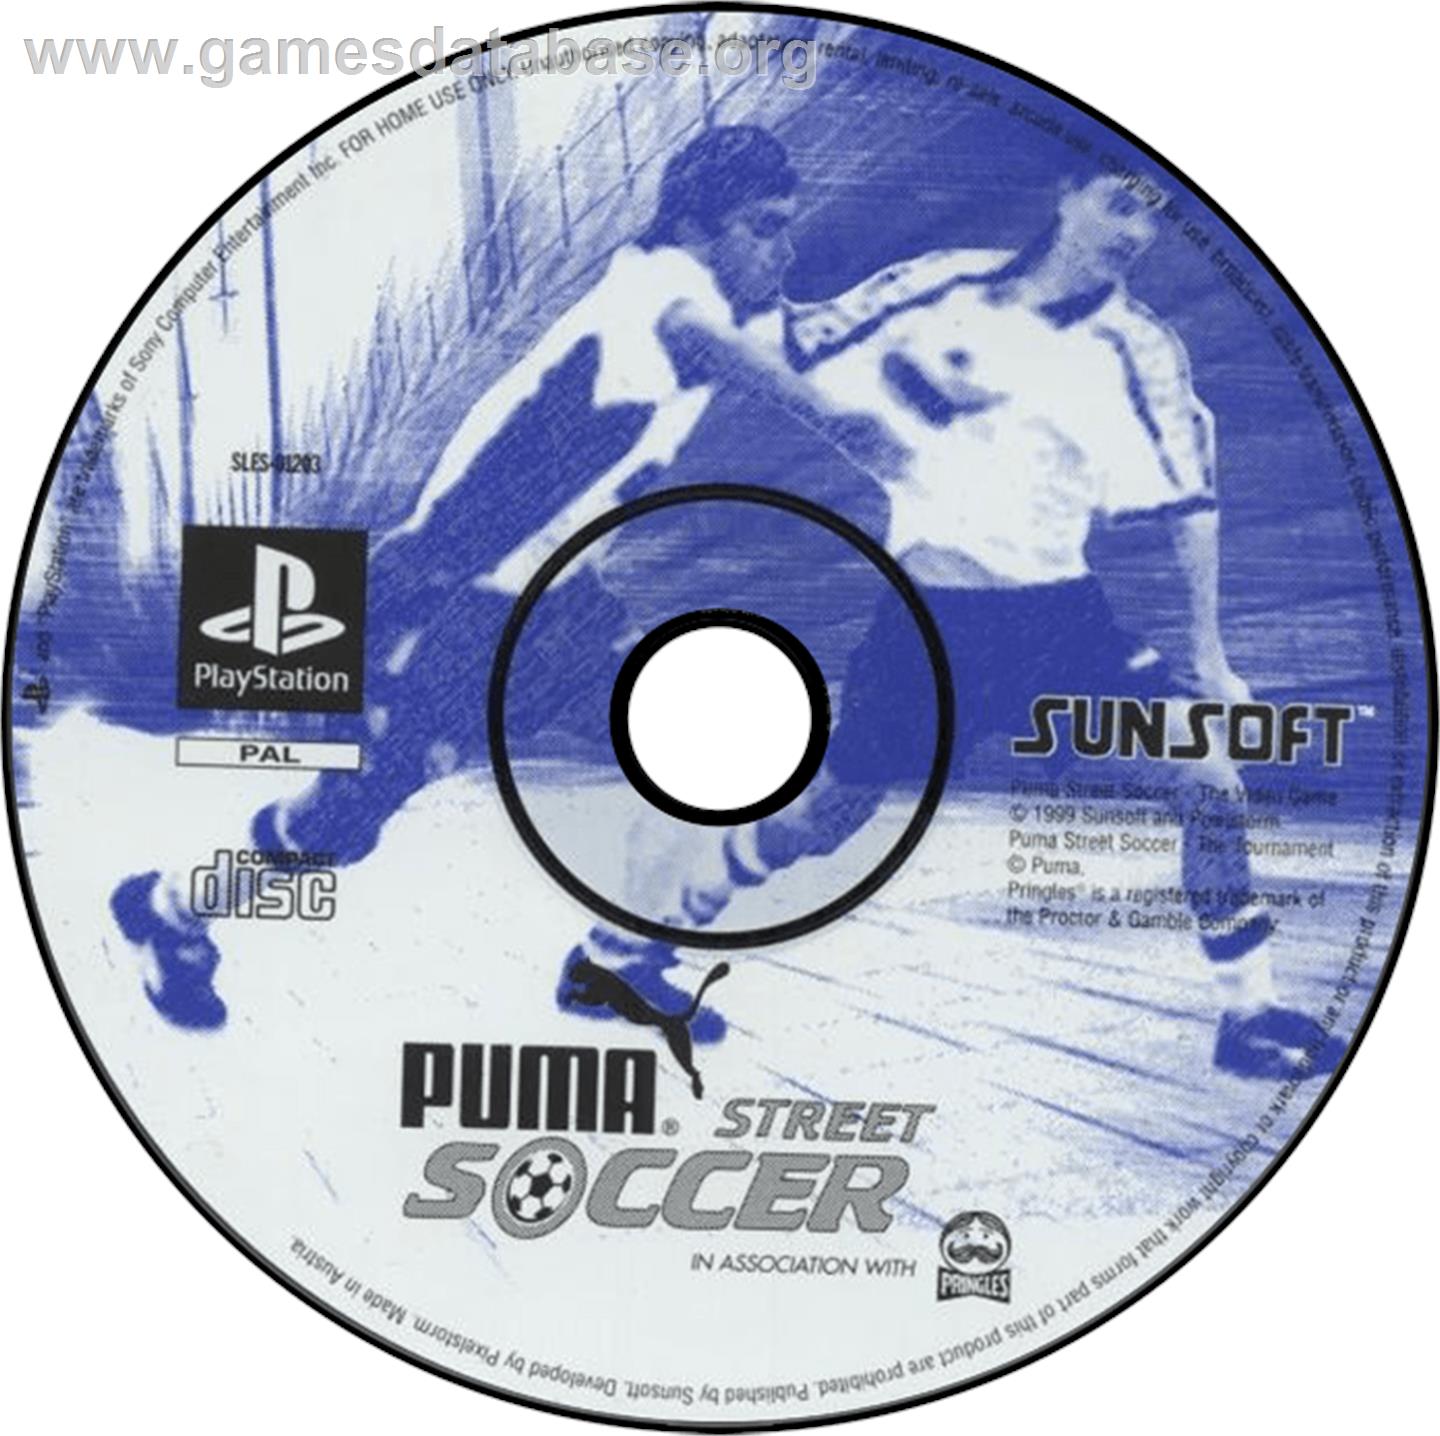 Puma Street Soccer - Sony Playstation - Artwork - Disc